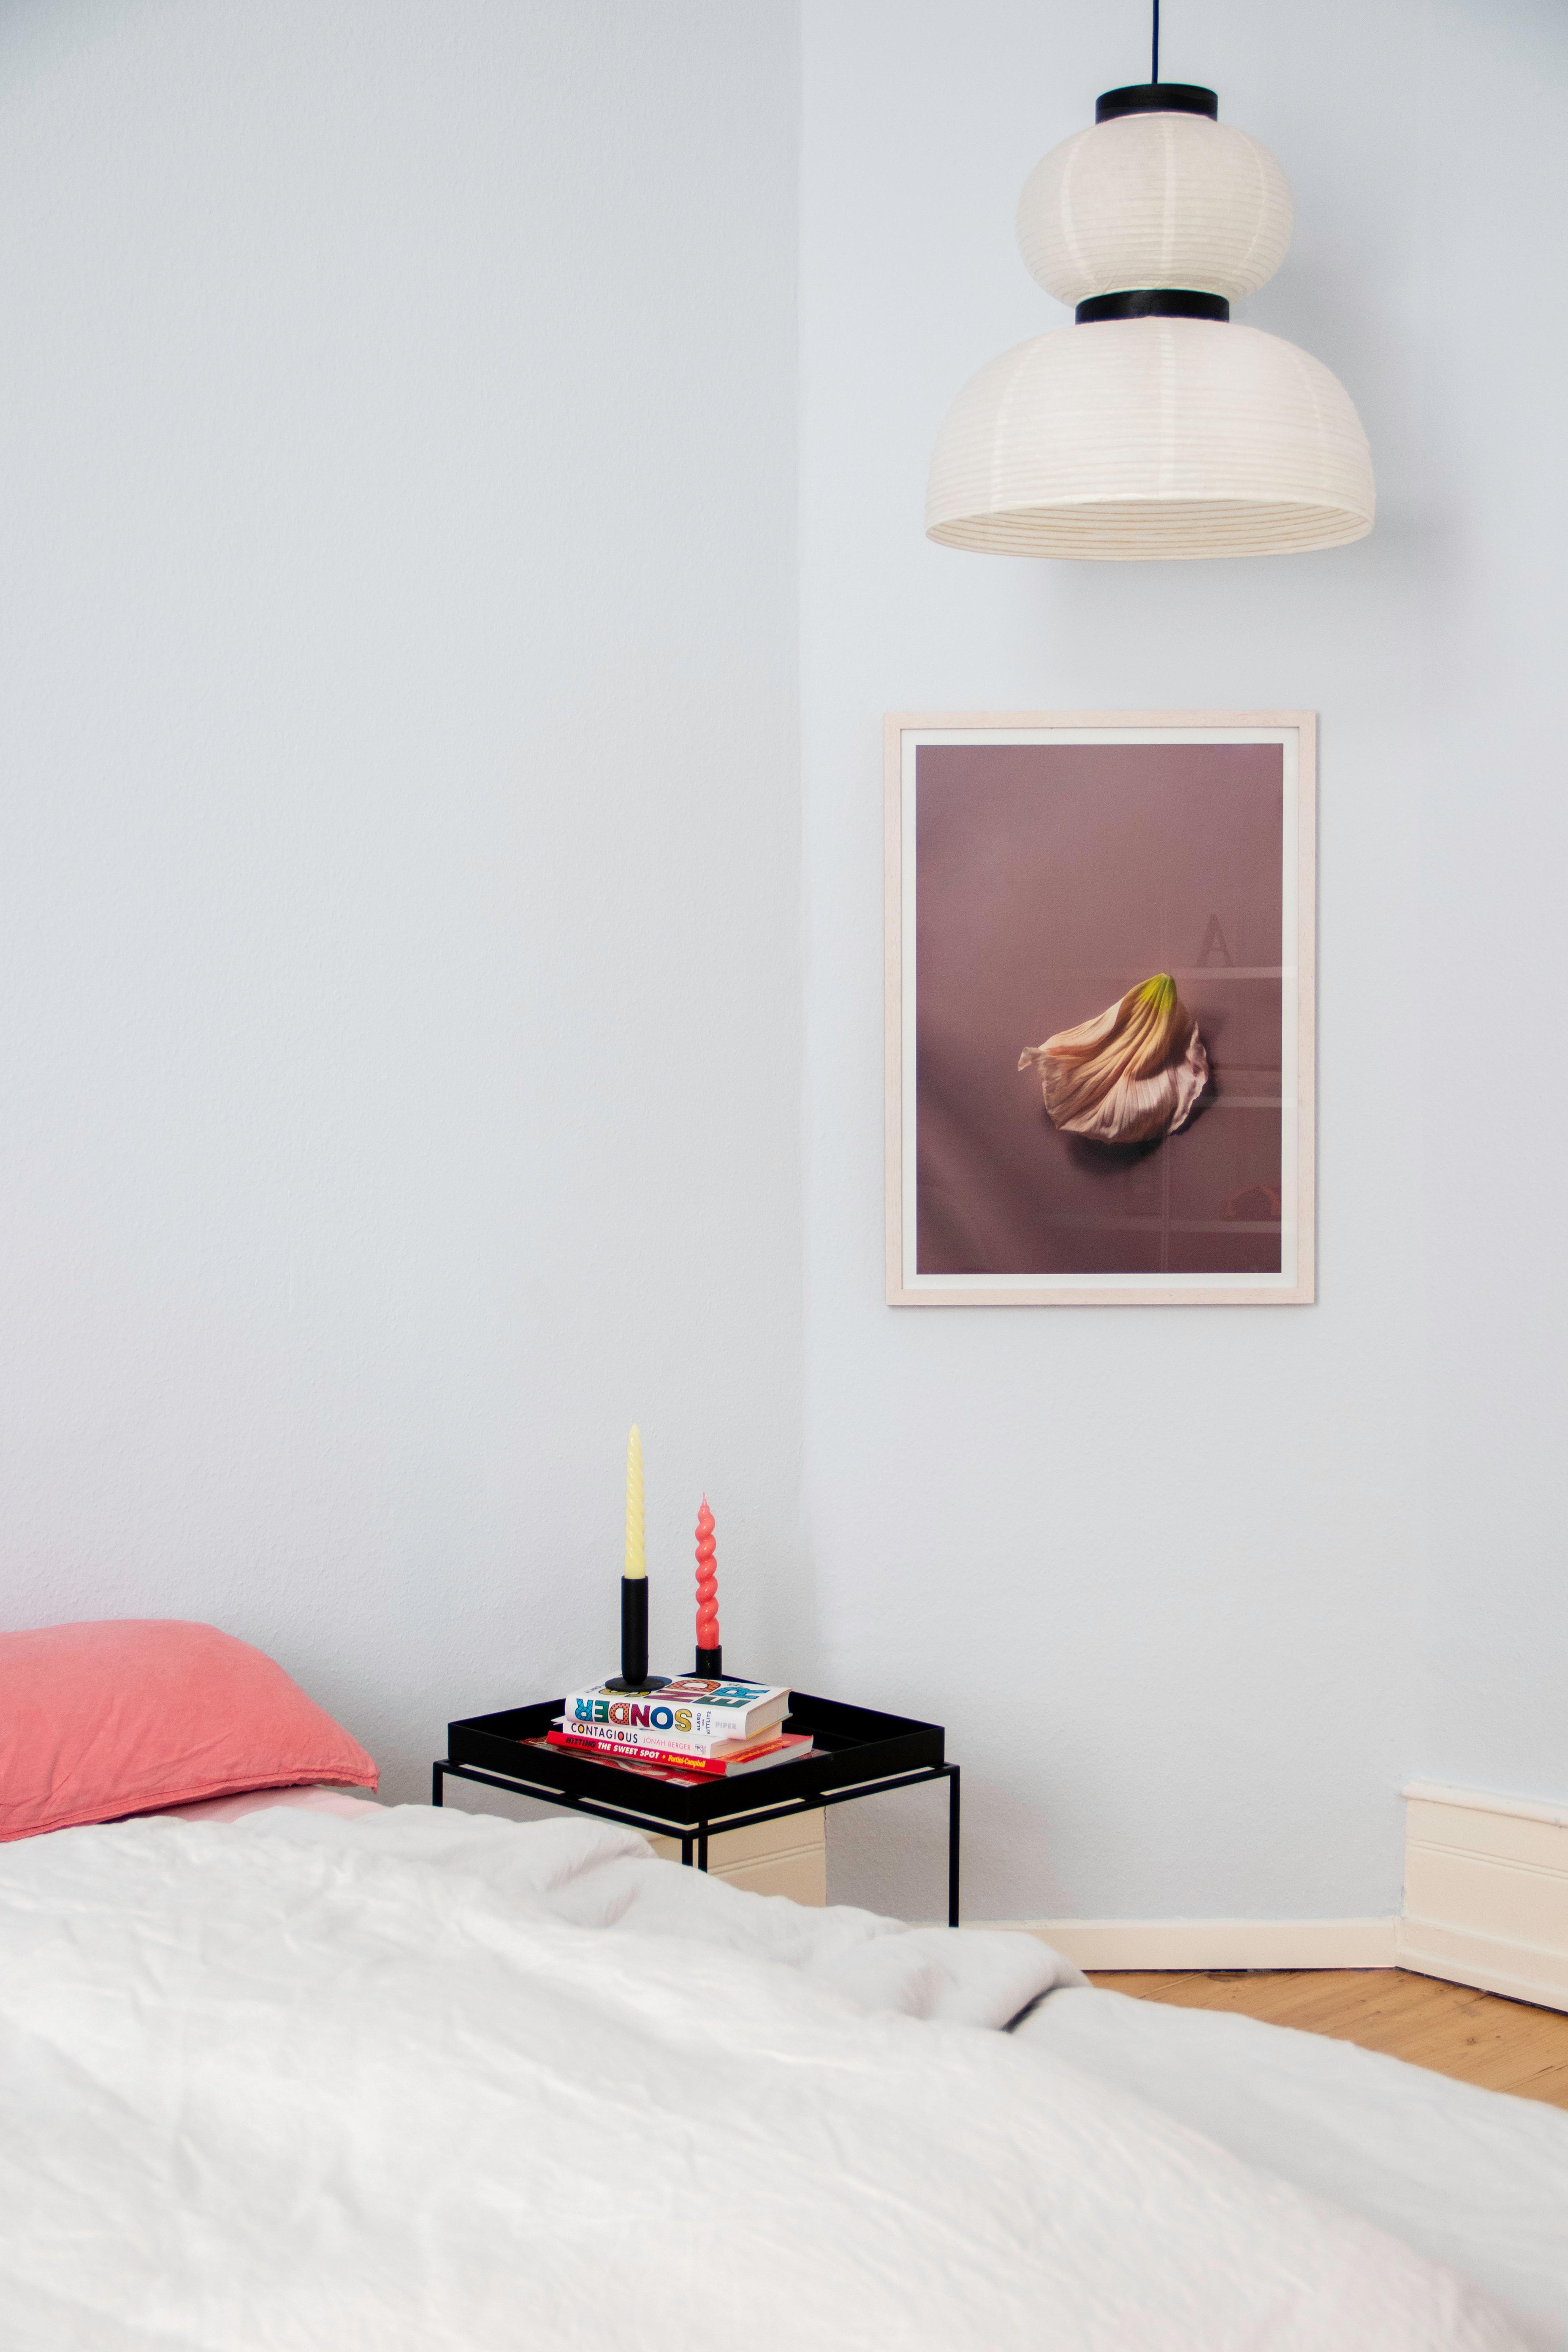 #Schlafzimmer #couchliebt #pastell #fotografie #blau #pastell #bett #beistelltisch #frühling #blume